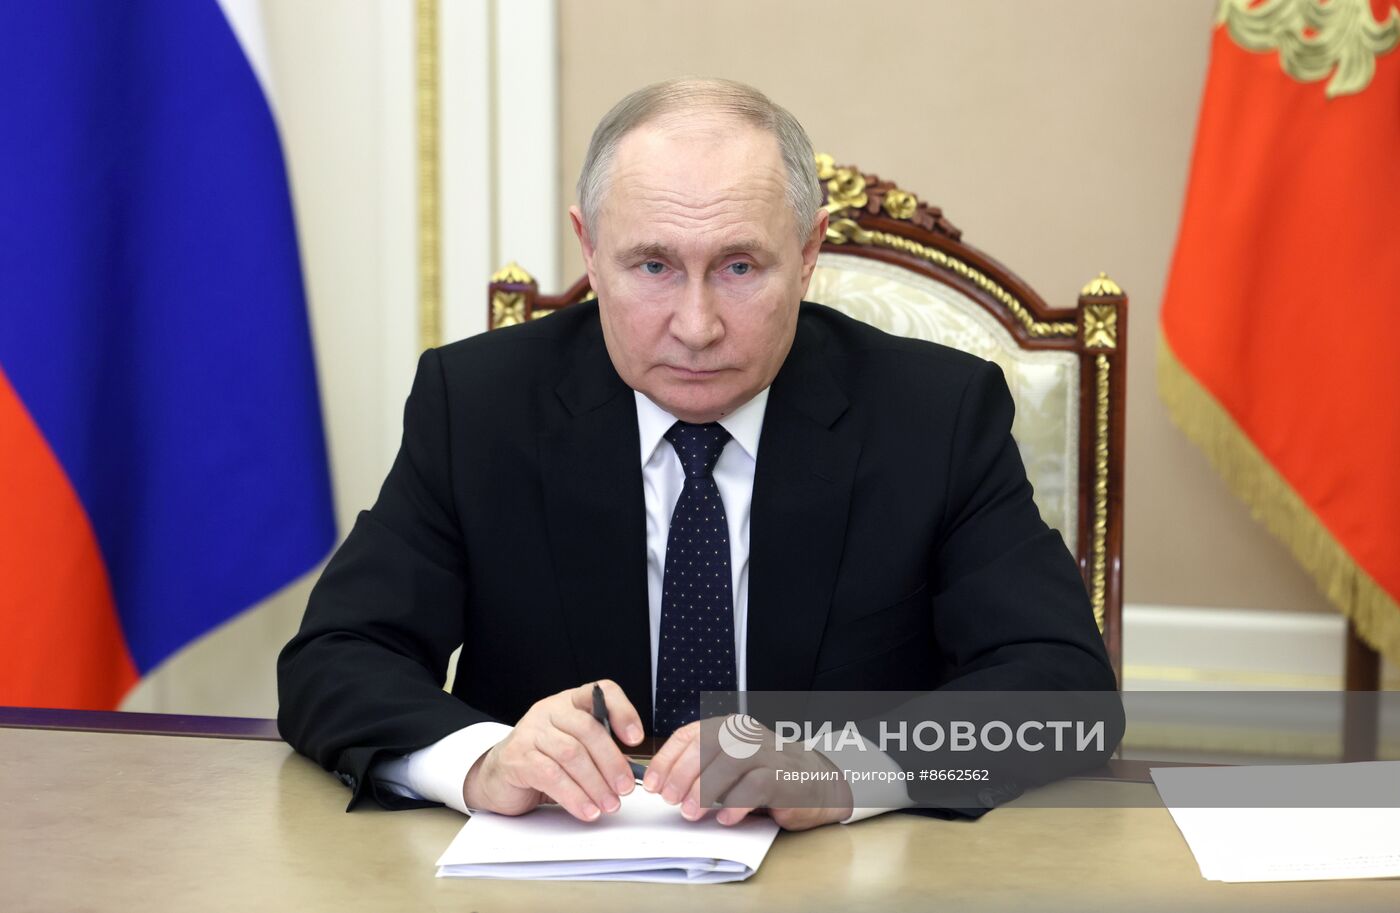 Президент Владимир Путин провел встречу с губернатором Волгоградской области Андреем Бочаровым